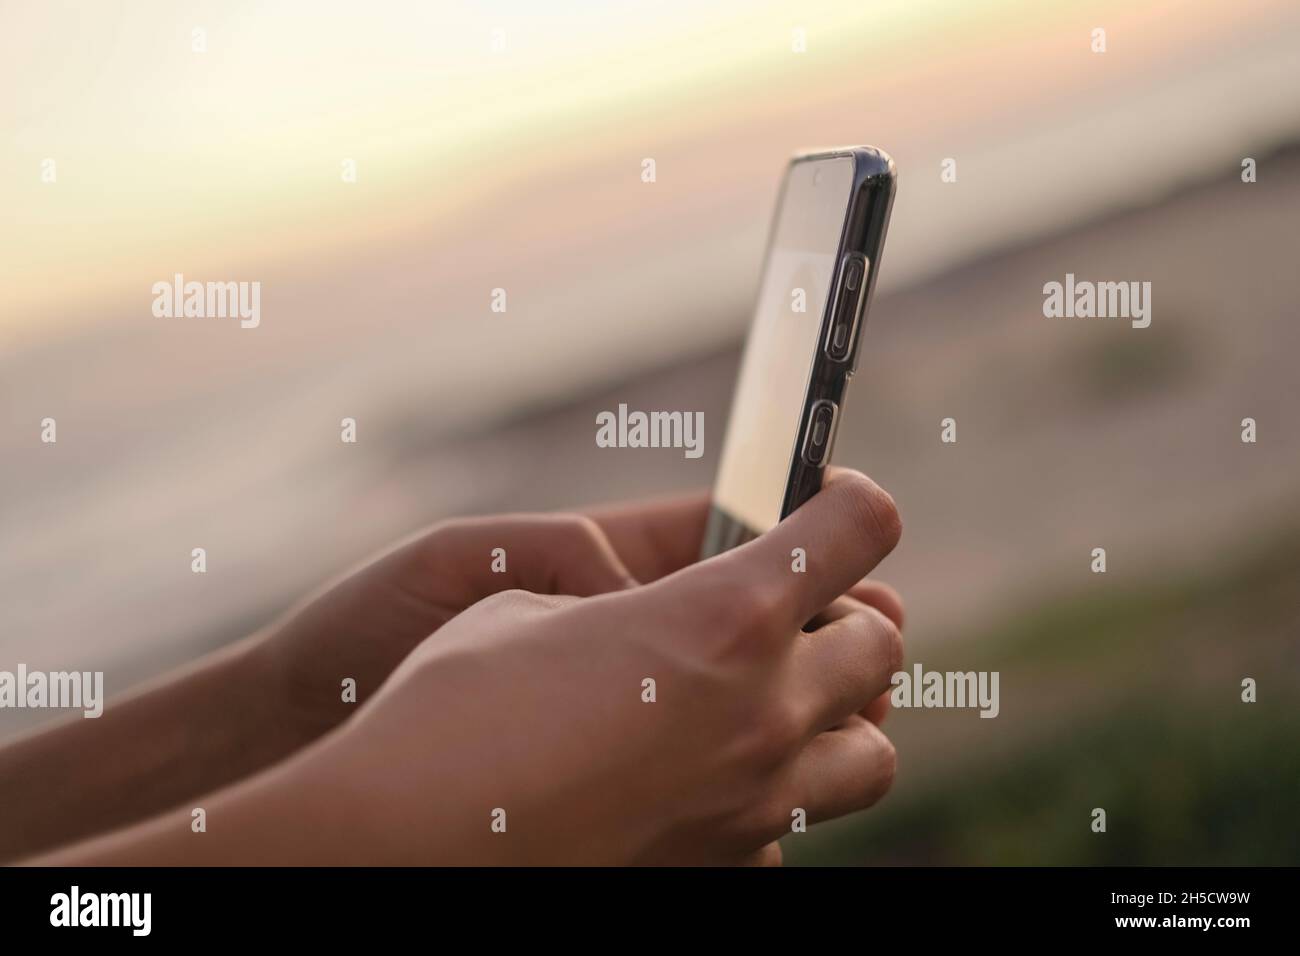 Las mujeres jóvenes utilizan el smartphone para chatear en las redes sociales sobre el fondo de la puesta de sol, la adicción a las células, la tecnología de la nueva era Foto de stock